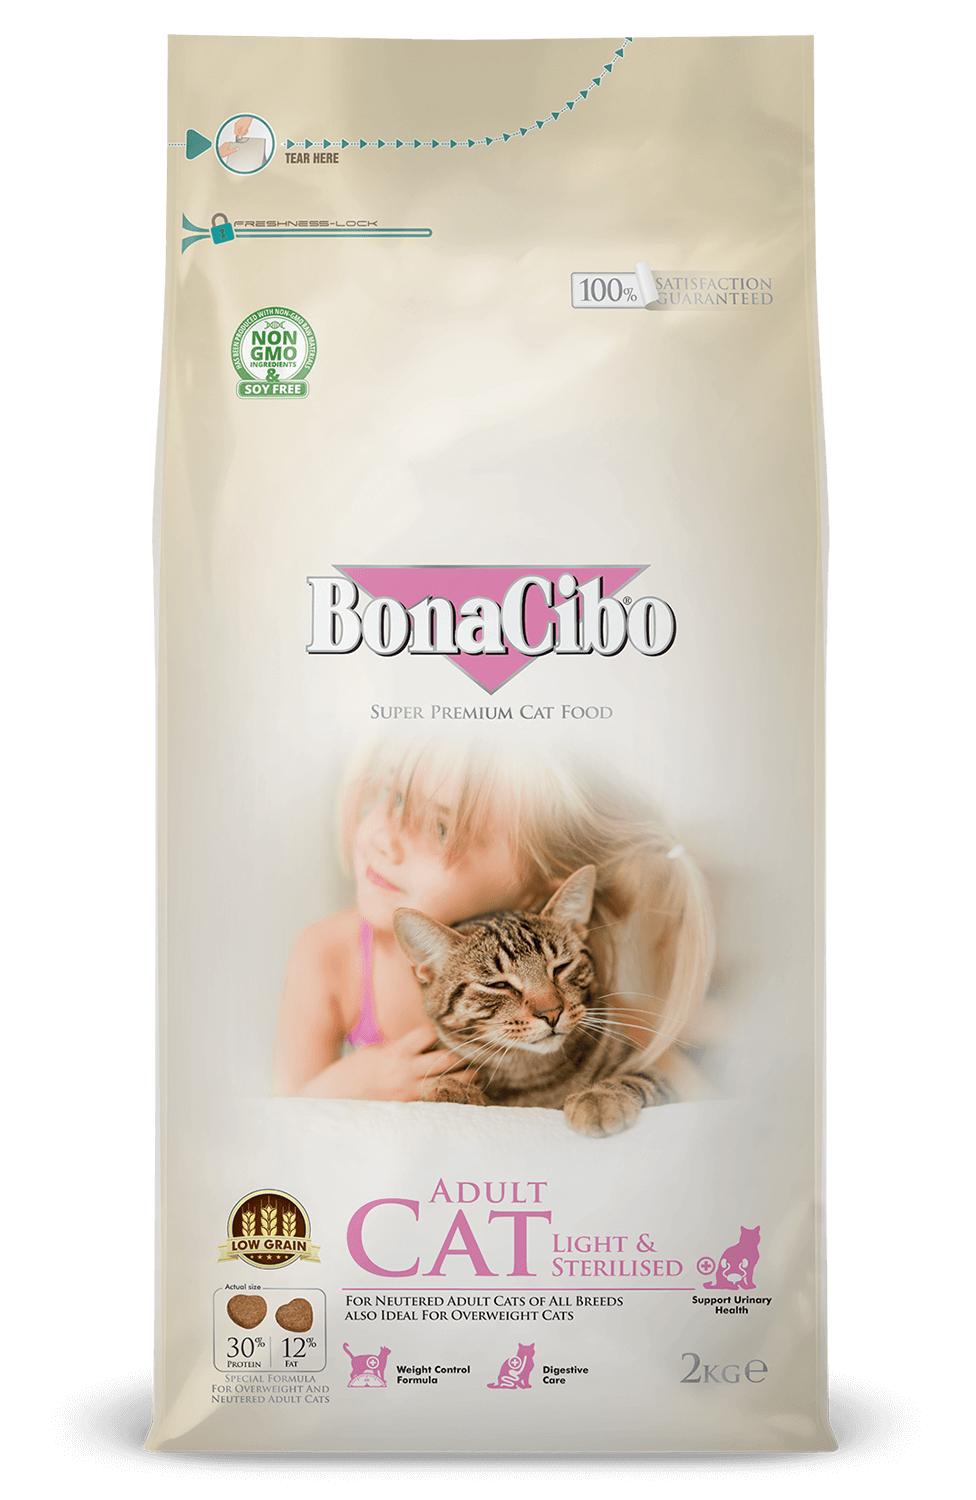 For Cats Bonacibo Cat Dog Food